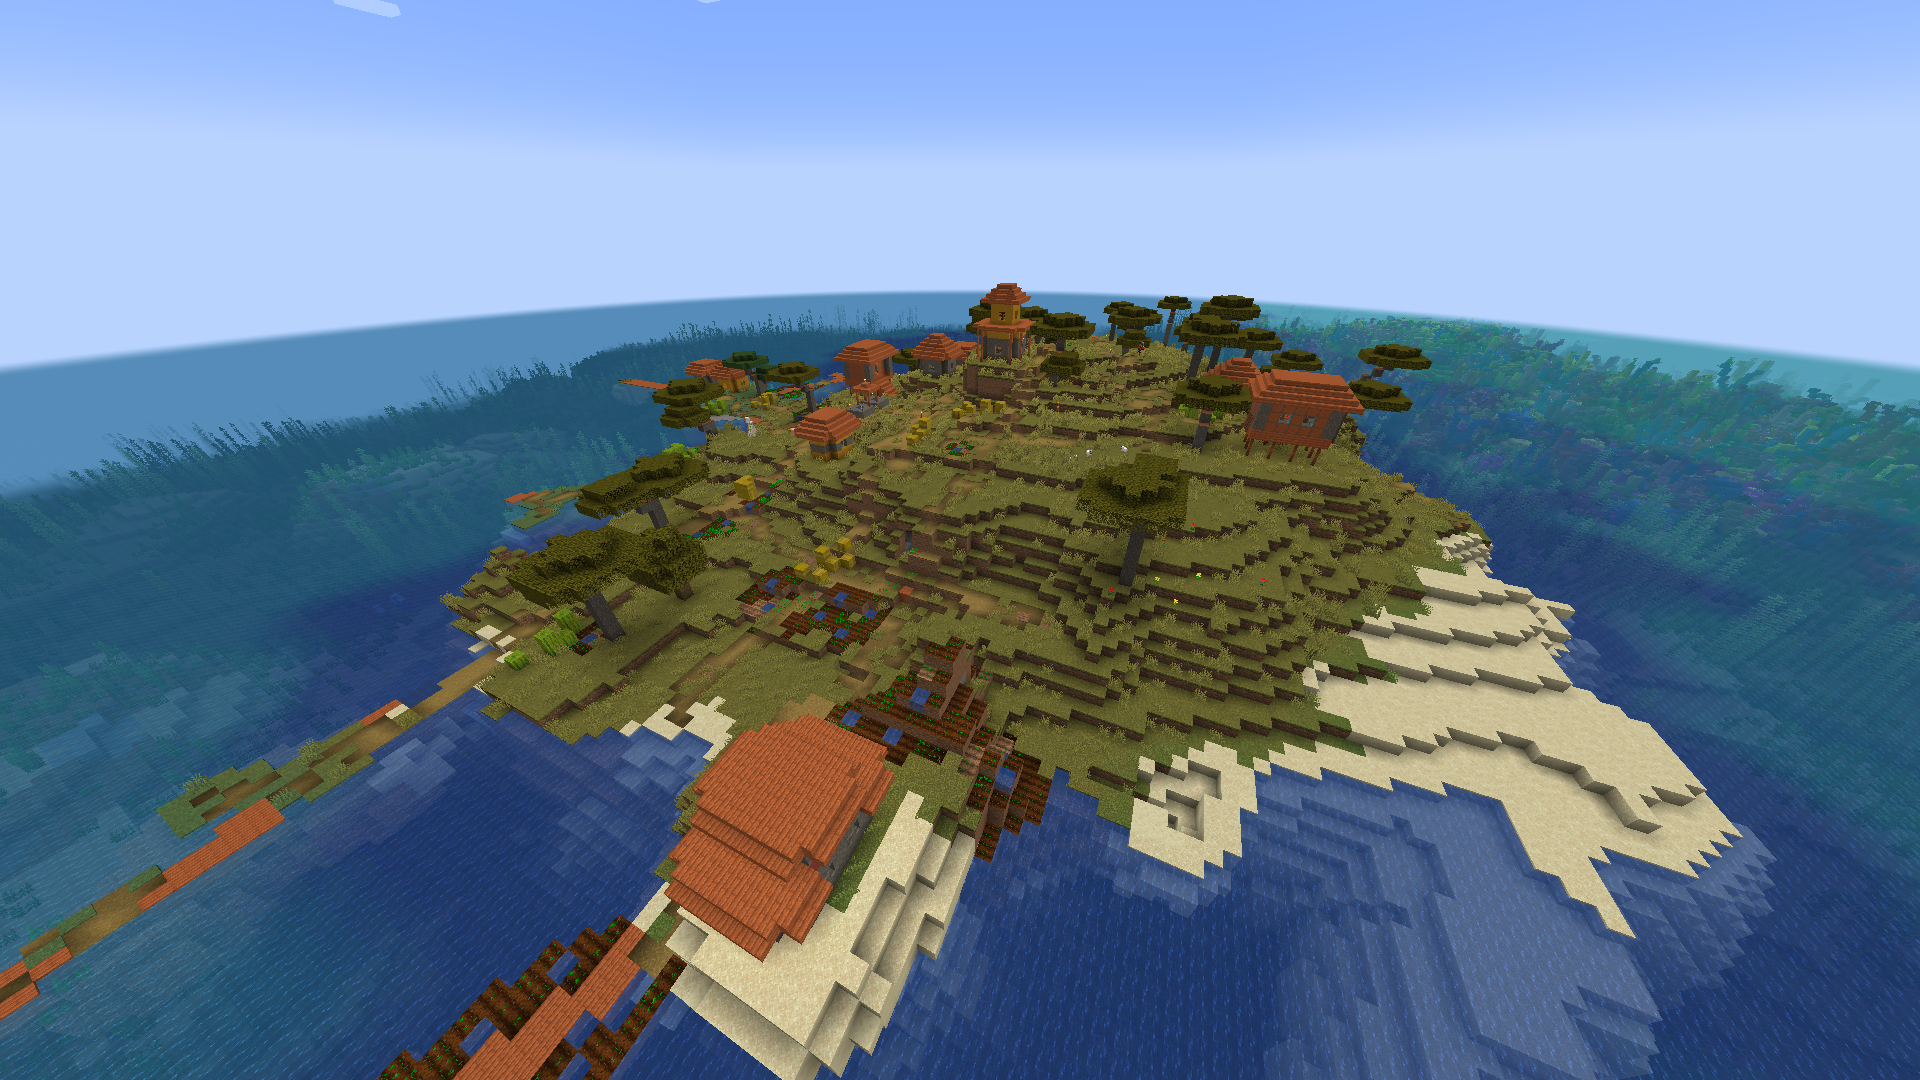 Minecraftdakı bir adada bir savanna biome